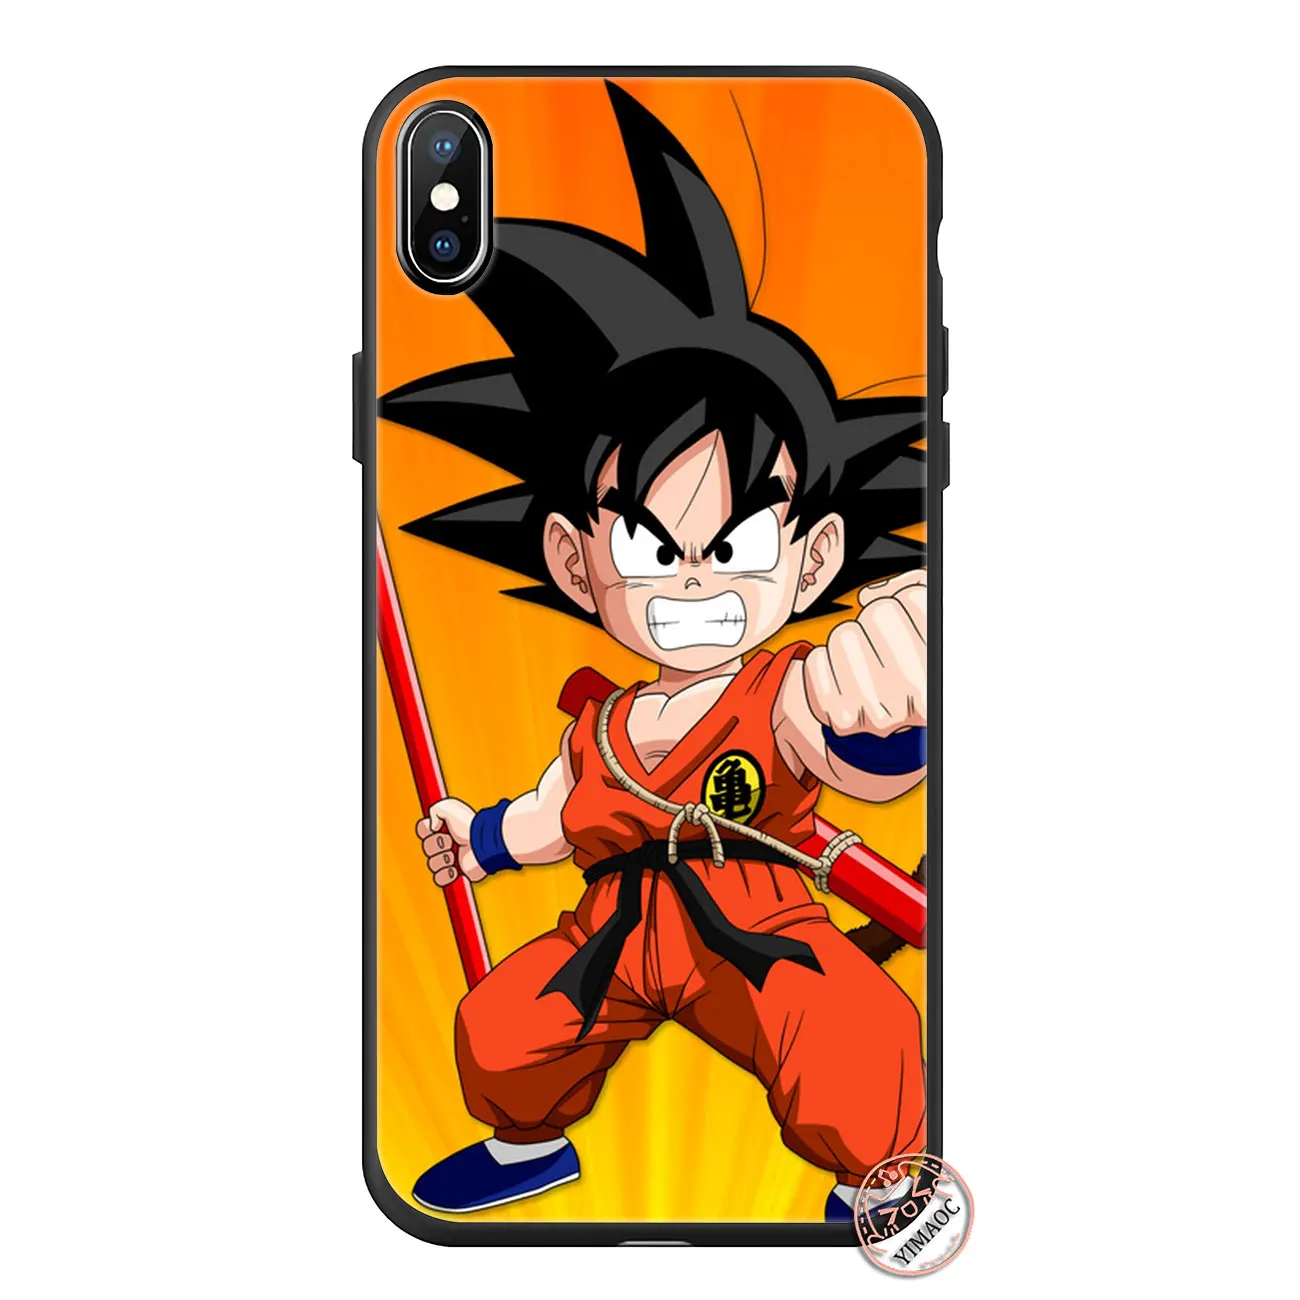 YIMAOC Dragon Ball z Goku Мягкий силиконовый чехол для телефона iPhone 11 Pro XS Max XR X 6 6S 7 8 Plus 5 5S SE 10 TPU черный чехол - Цвет: 10